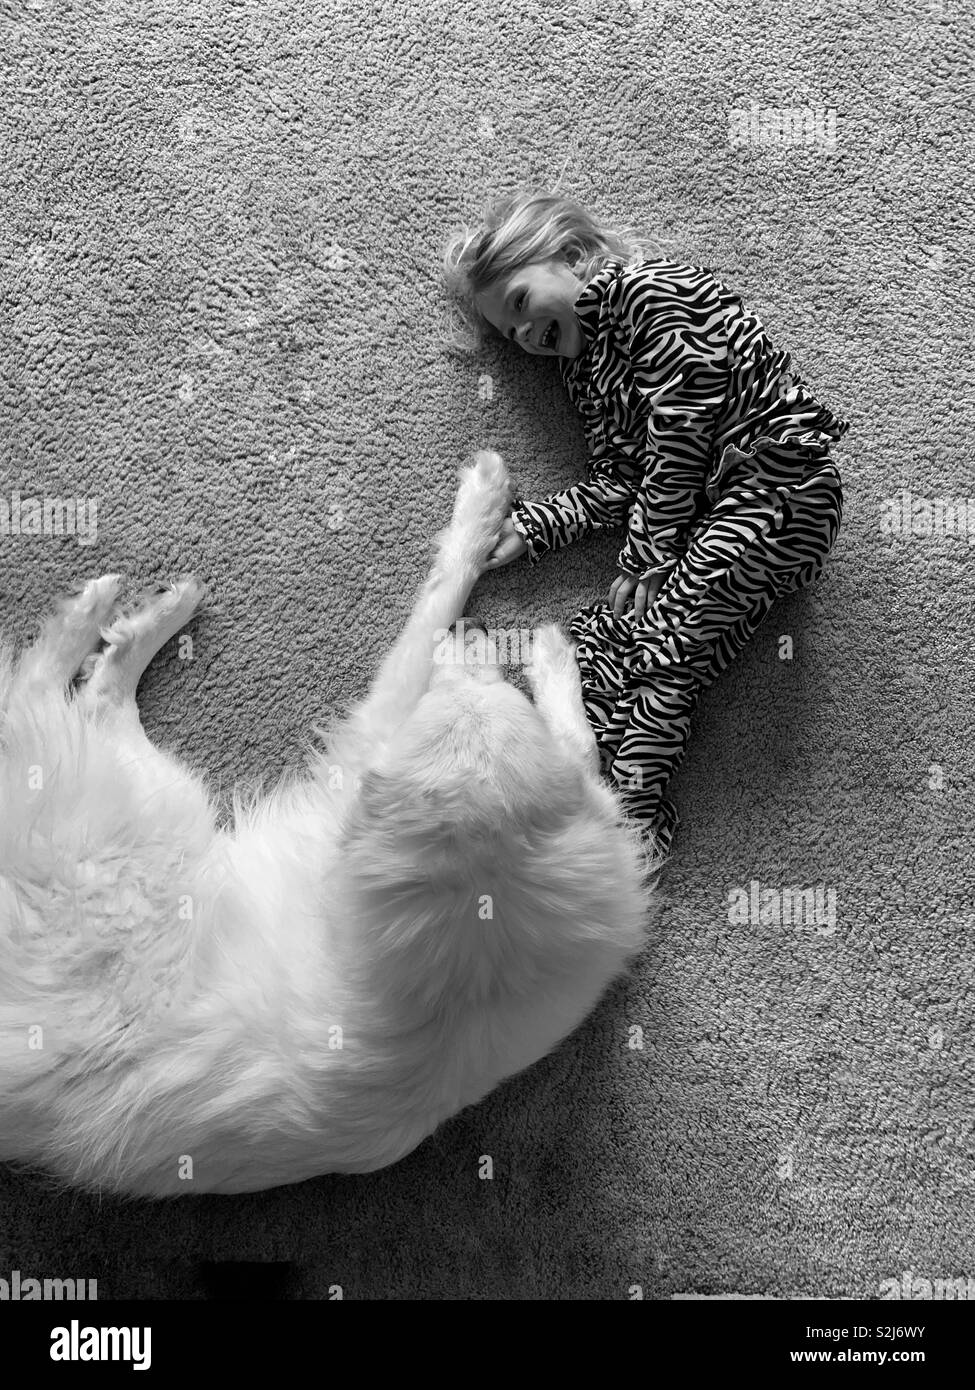 La ragazza di zebra striped pigiami e un bianco grande Pirenei cane posa sul pavimento ridendo. Foto Stock